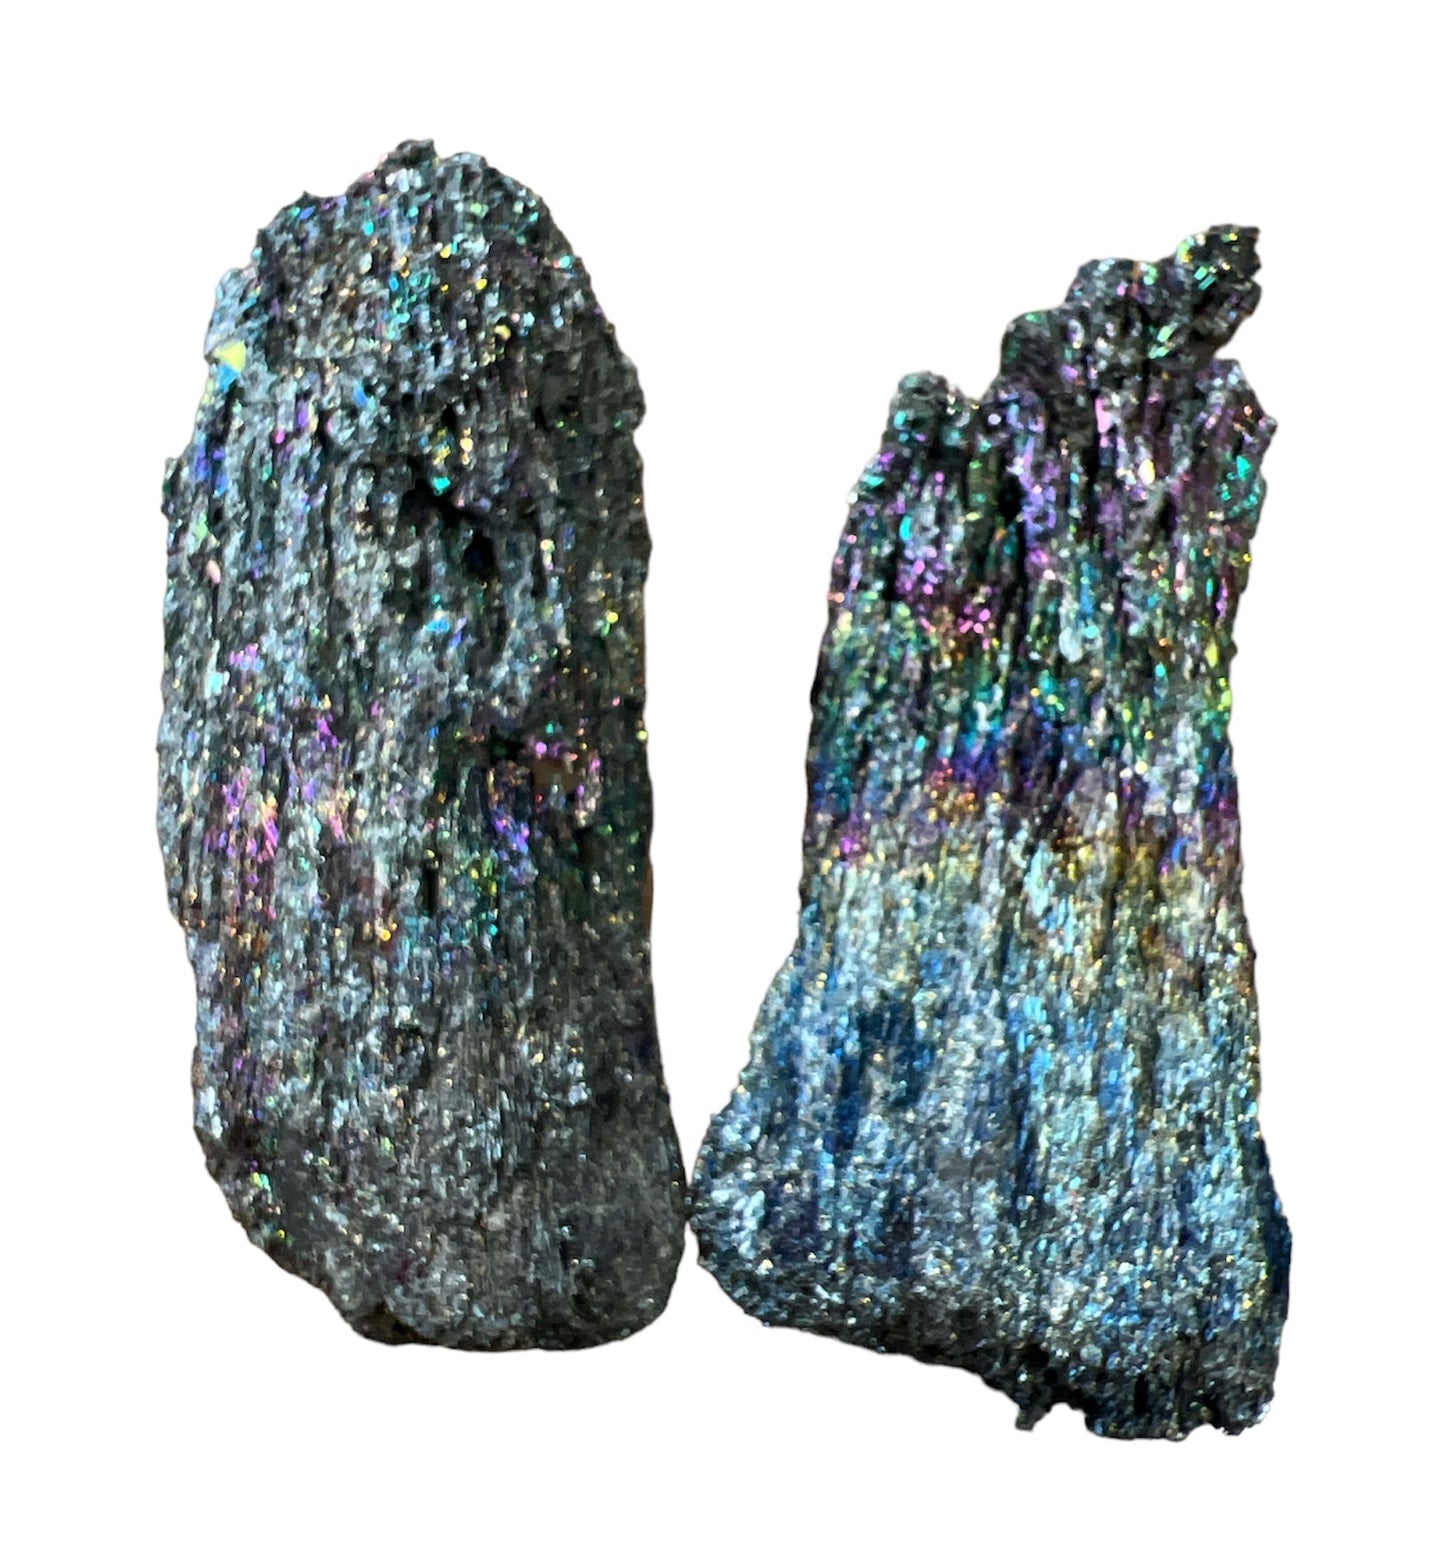 Silicon Carbide Carborundum A Grade Large Gemstone Clusters Specium